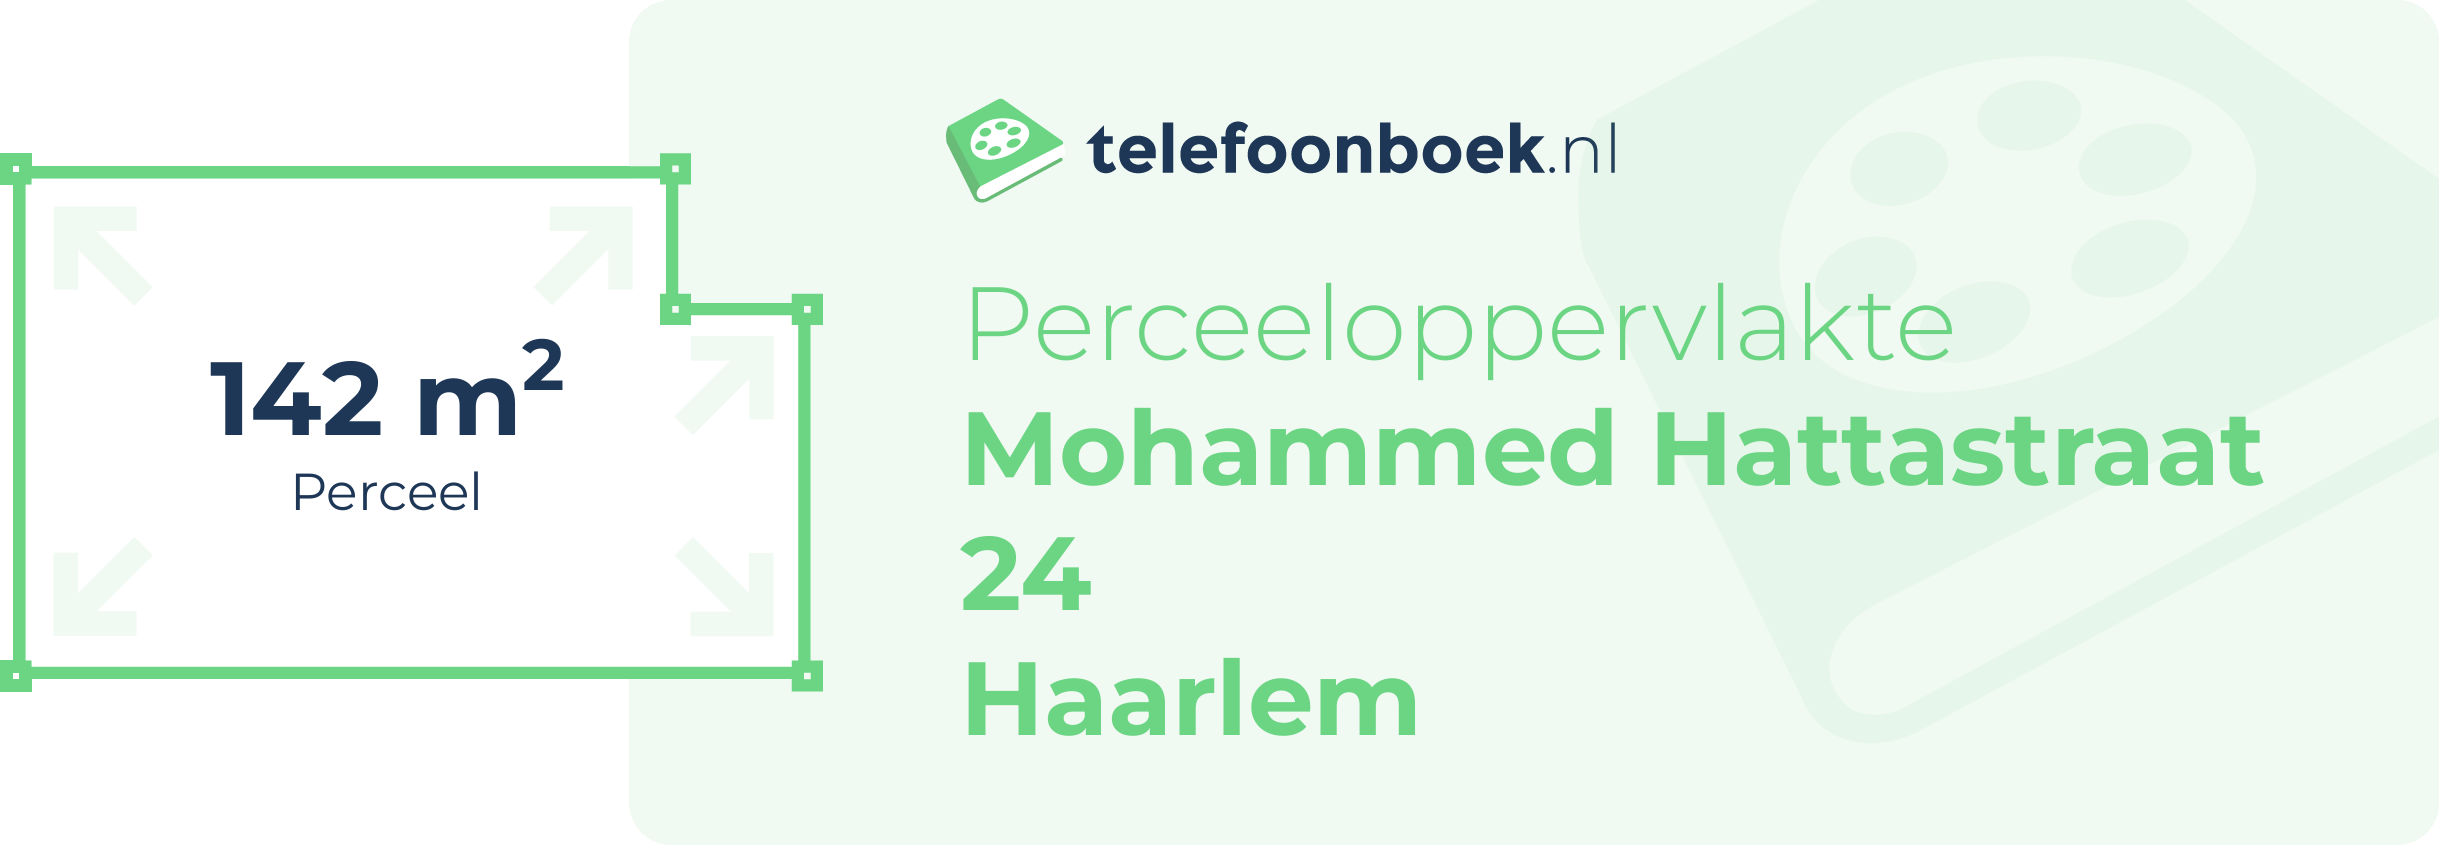 Perceeloppervlakte Mohammed Hattastraat 24 Haarlem